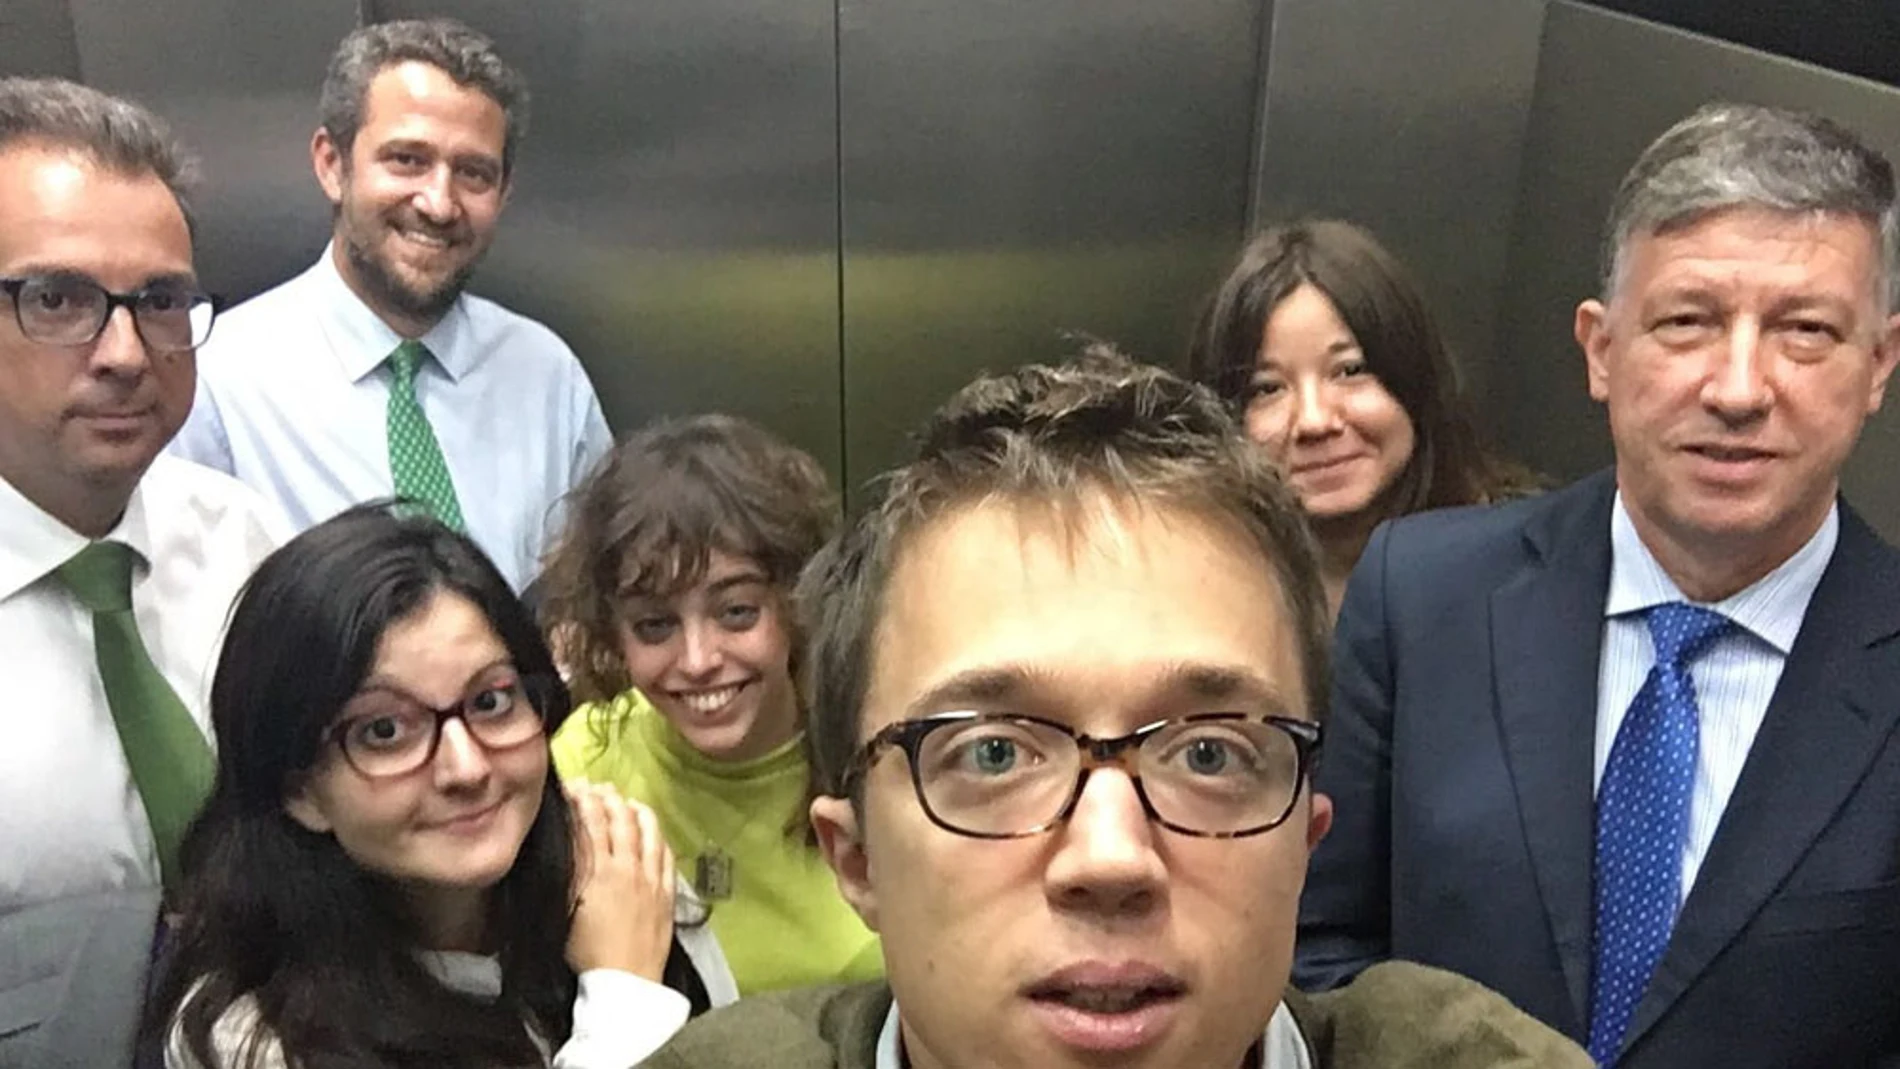 Imagen subida por Errejón del momento en el que un ascensor del Congreso se ha averiado